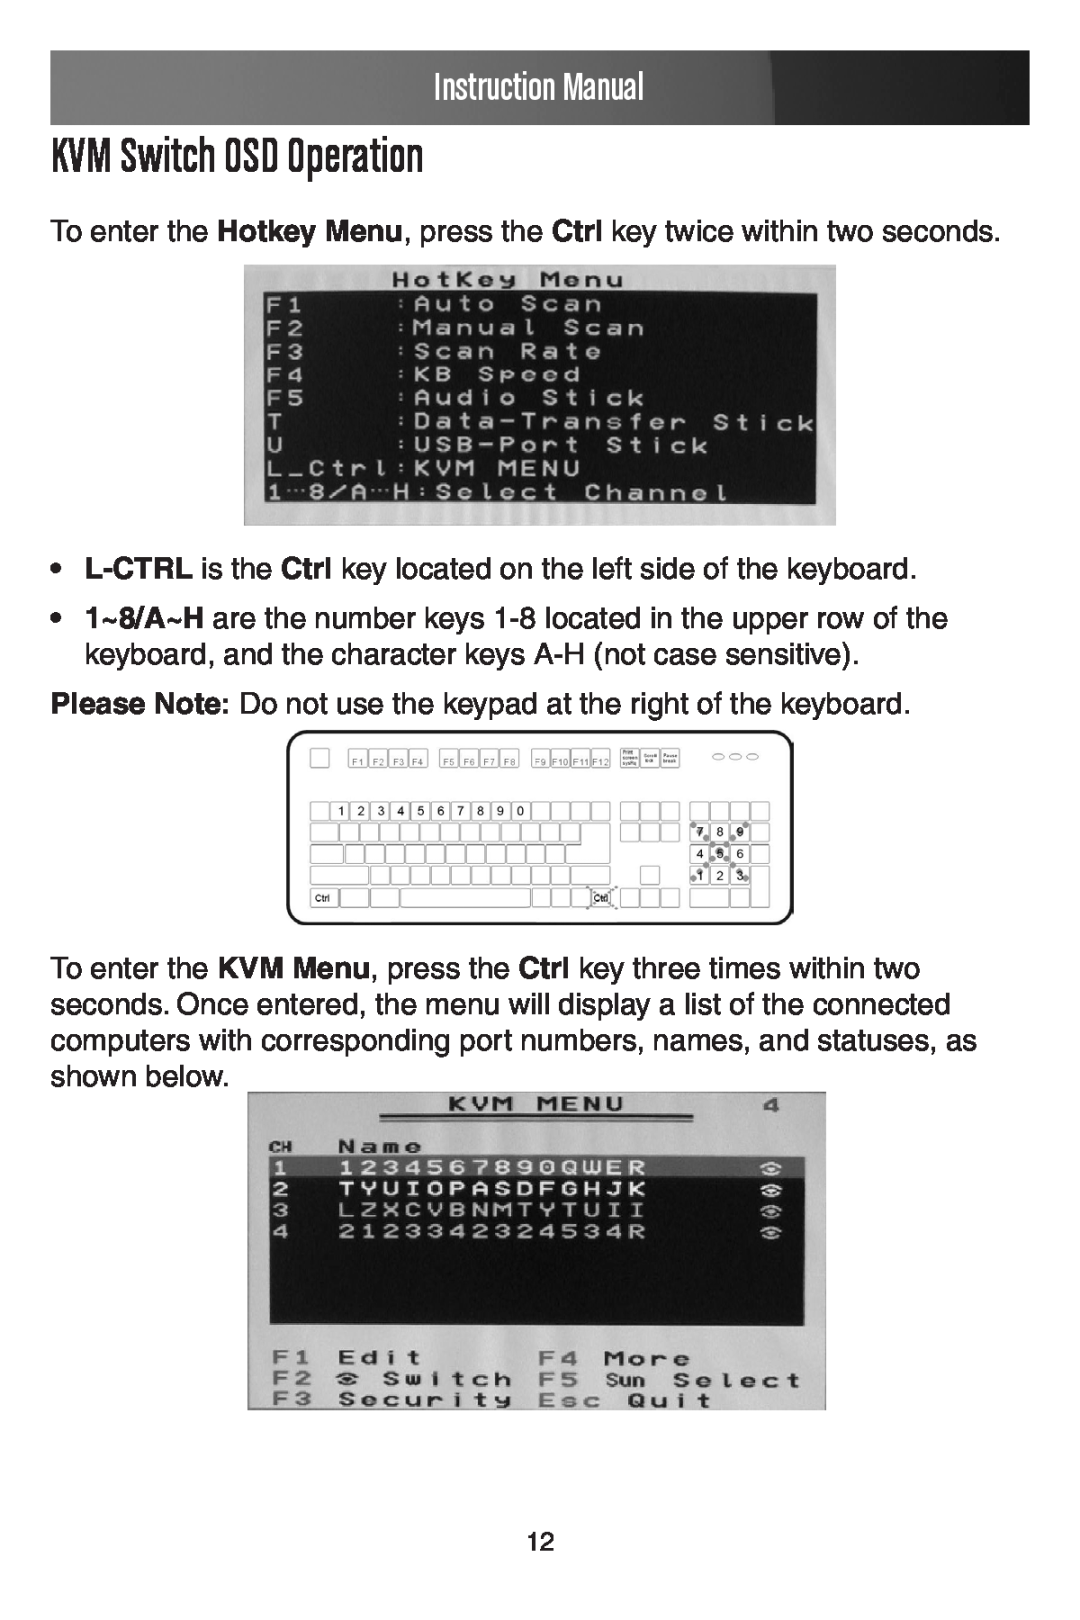 StarTech.com SV441DUSBI instruction manual KVM Switch OSD Operation, Instruction Manual 